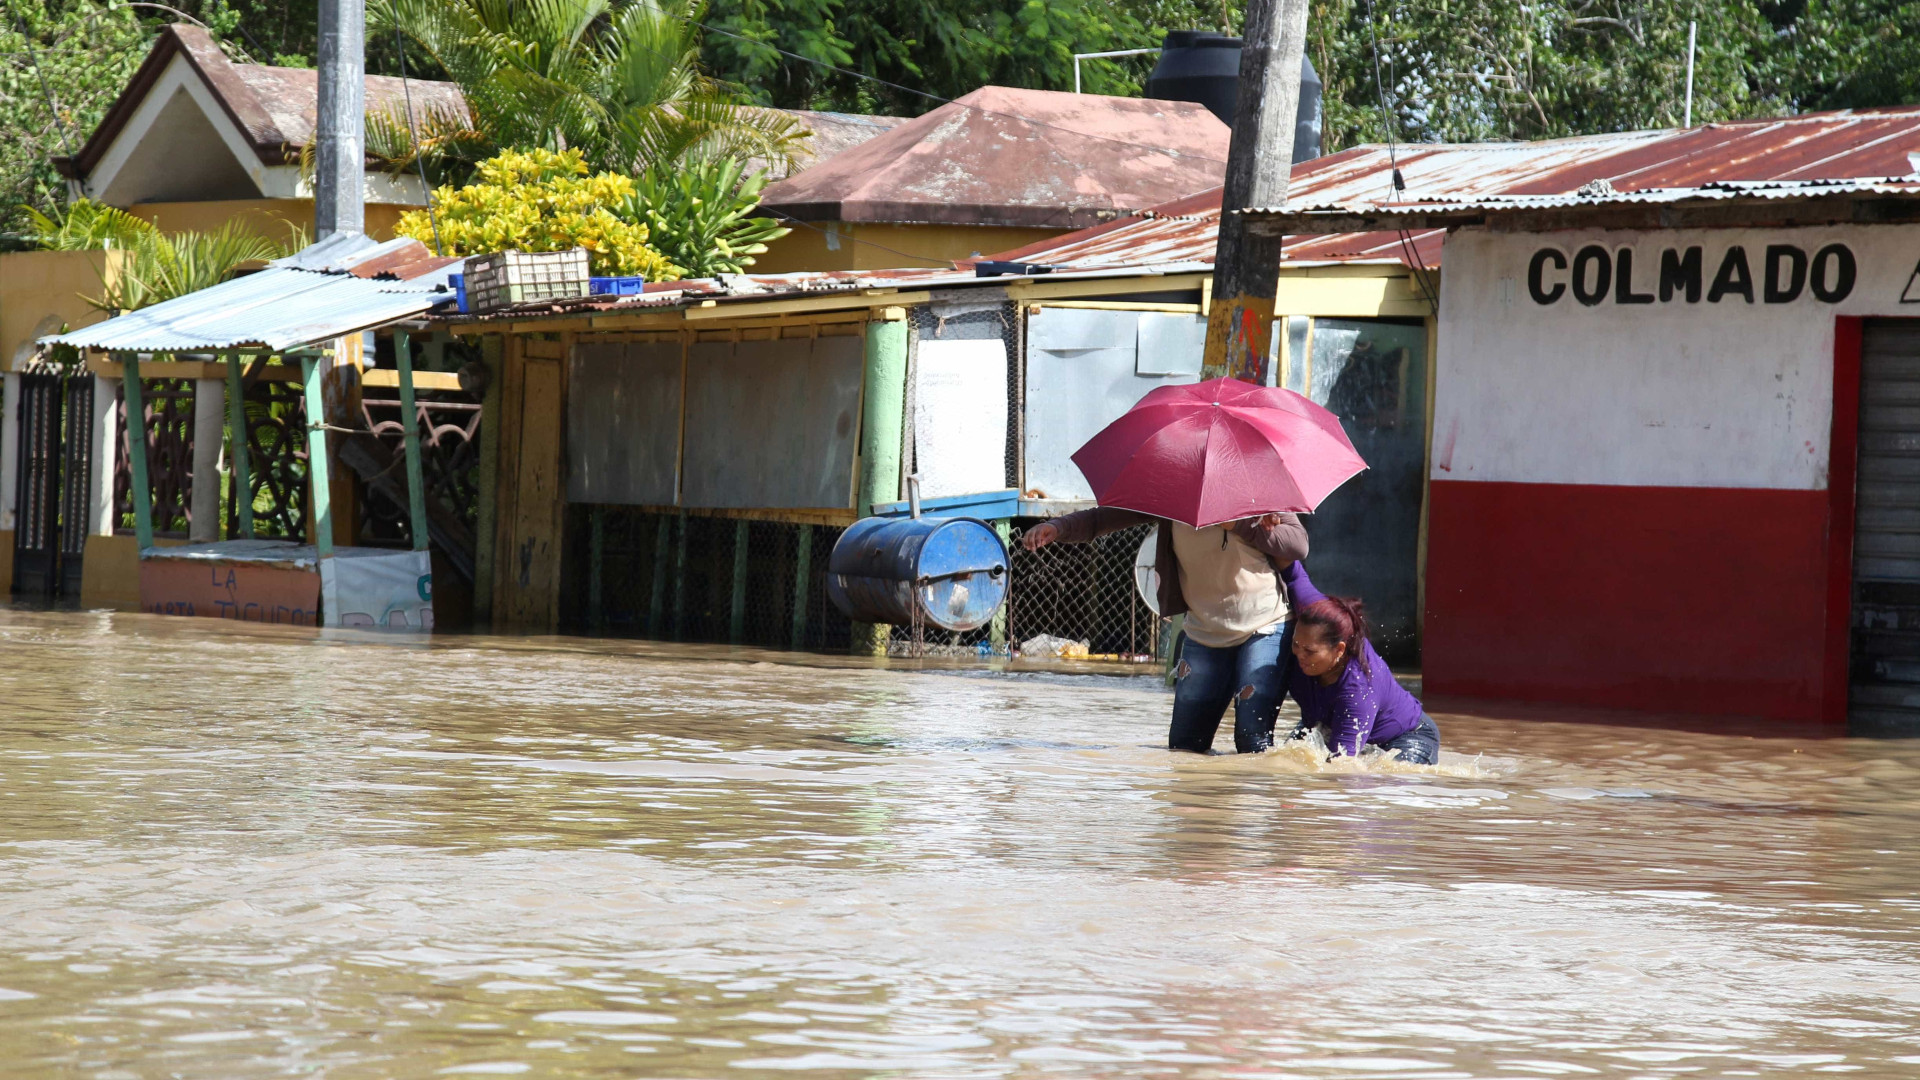 República Dominicana: mais de 8,8 mil casas estão alagadas após furacão